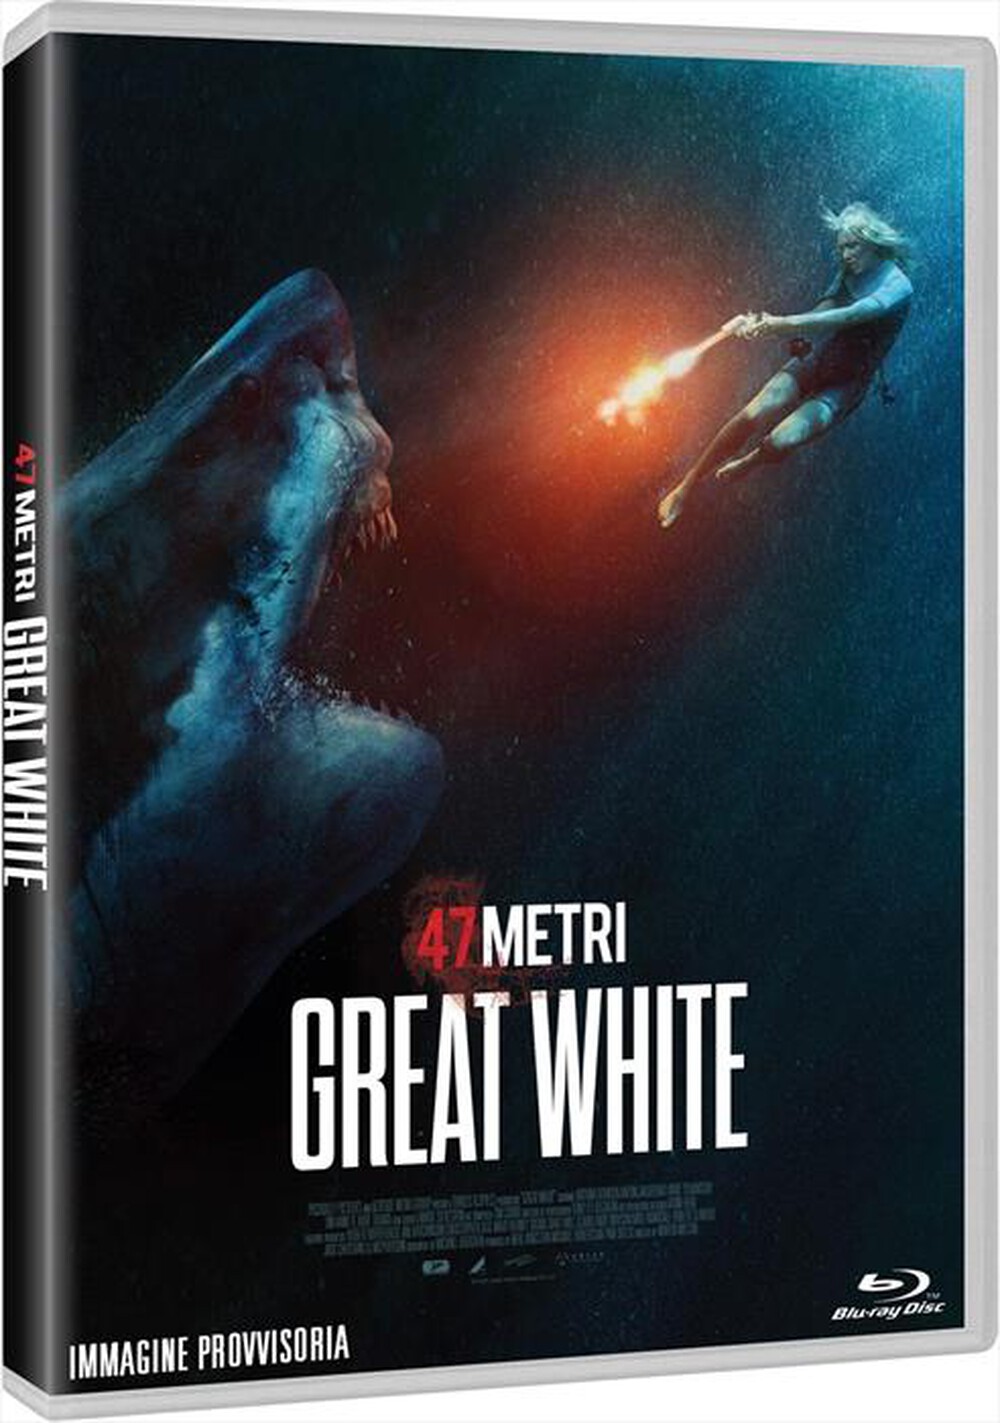 "Adler Entertainment - 47 Metri: Great White"